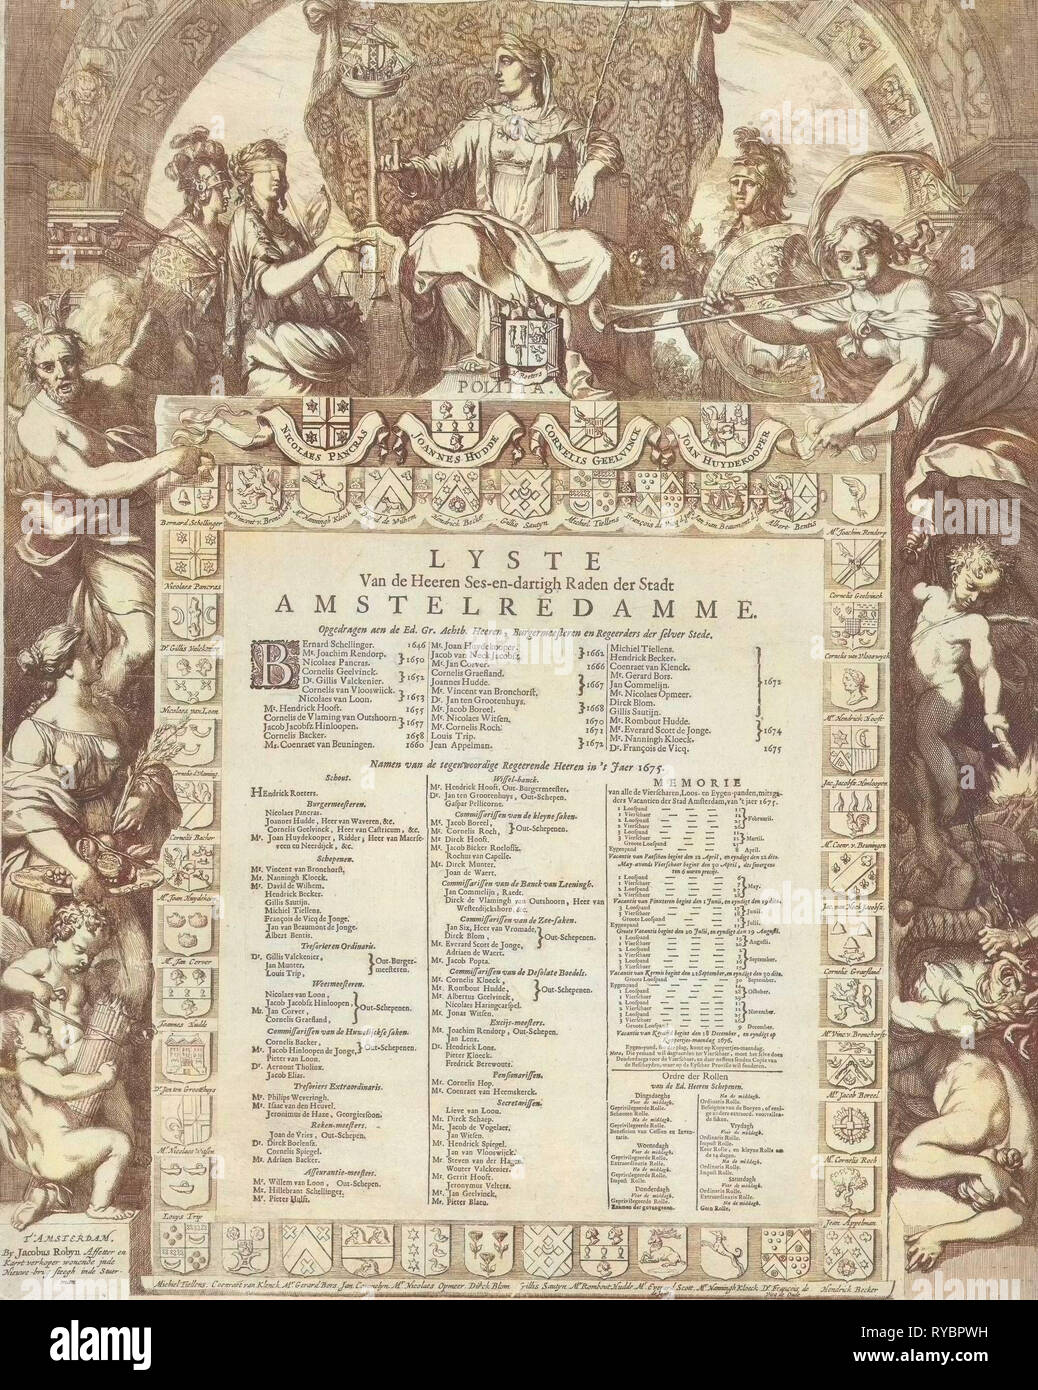 Allegorie der Vorstand der Stadt Amsterdam mit der Liste Name und Wappen der Mitglieder der Regierung, drucken Teekocher: Gerard de Lairesse, Jacobus Robijn, 1672 Stockfoto